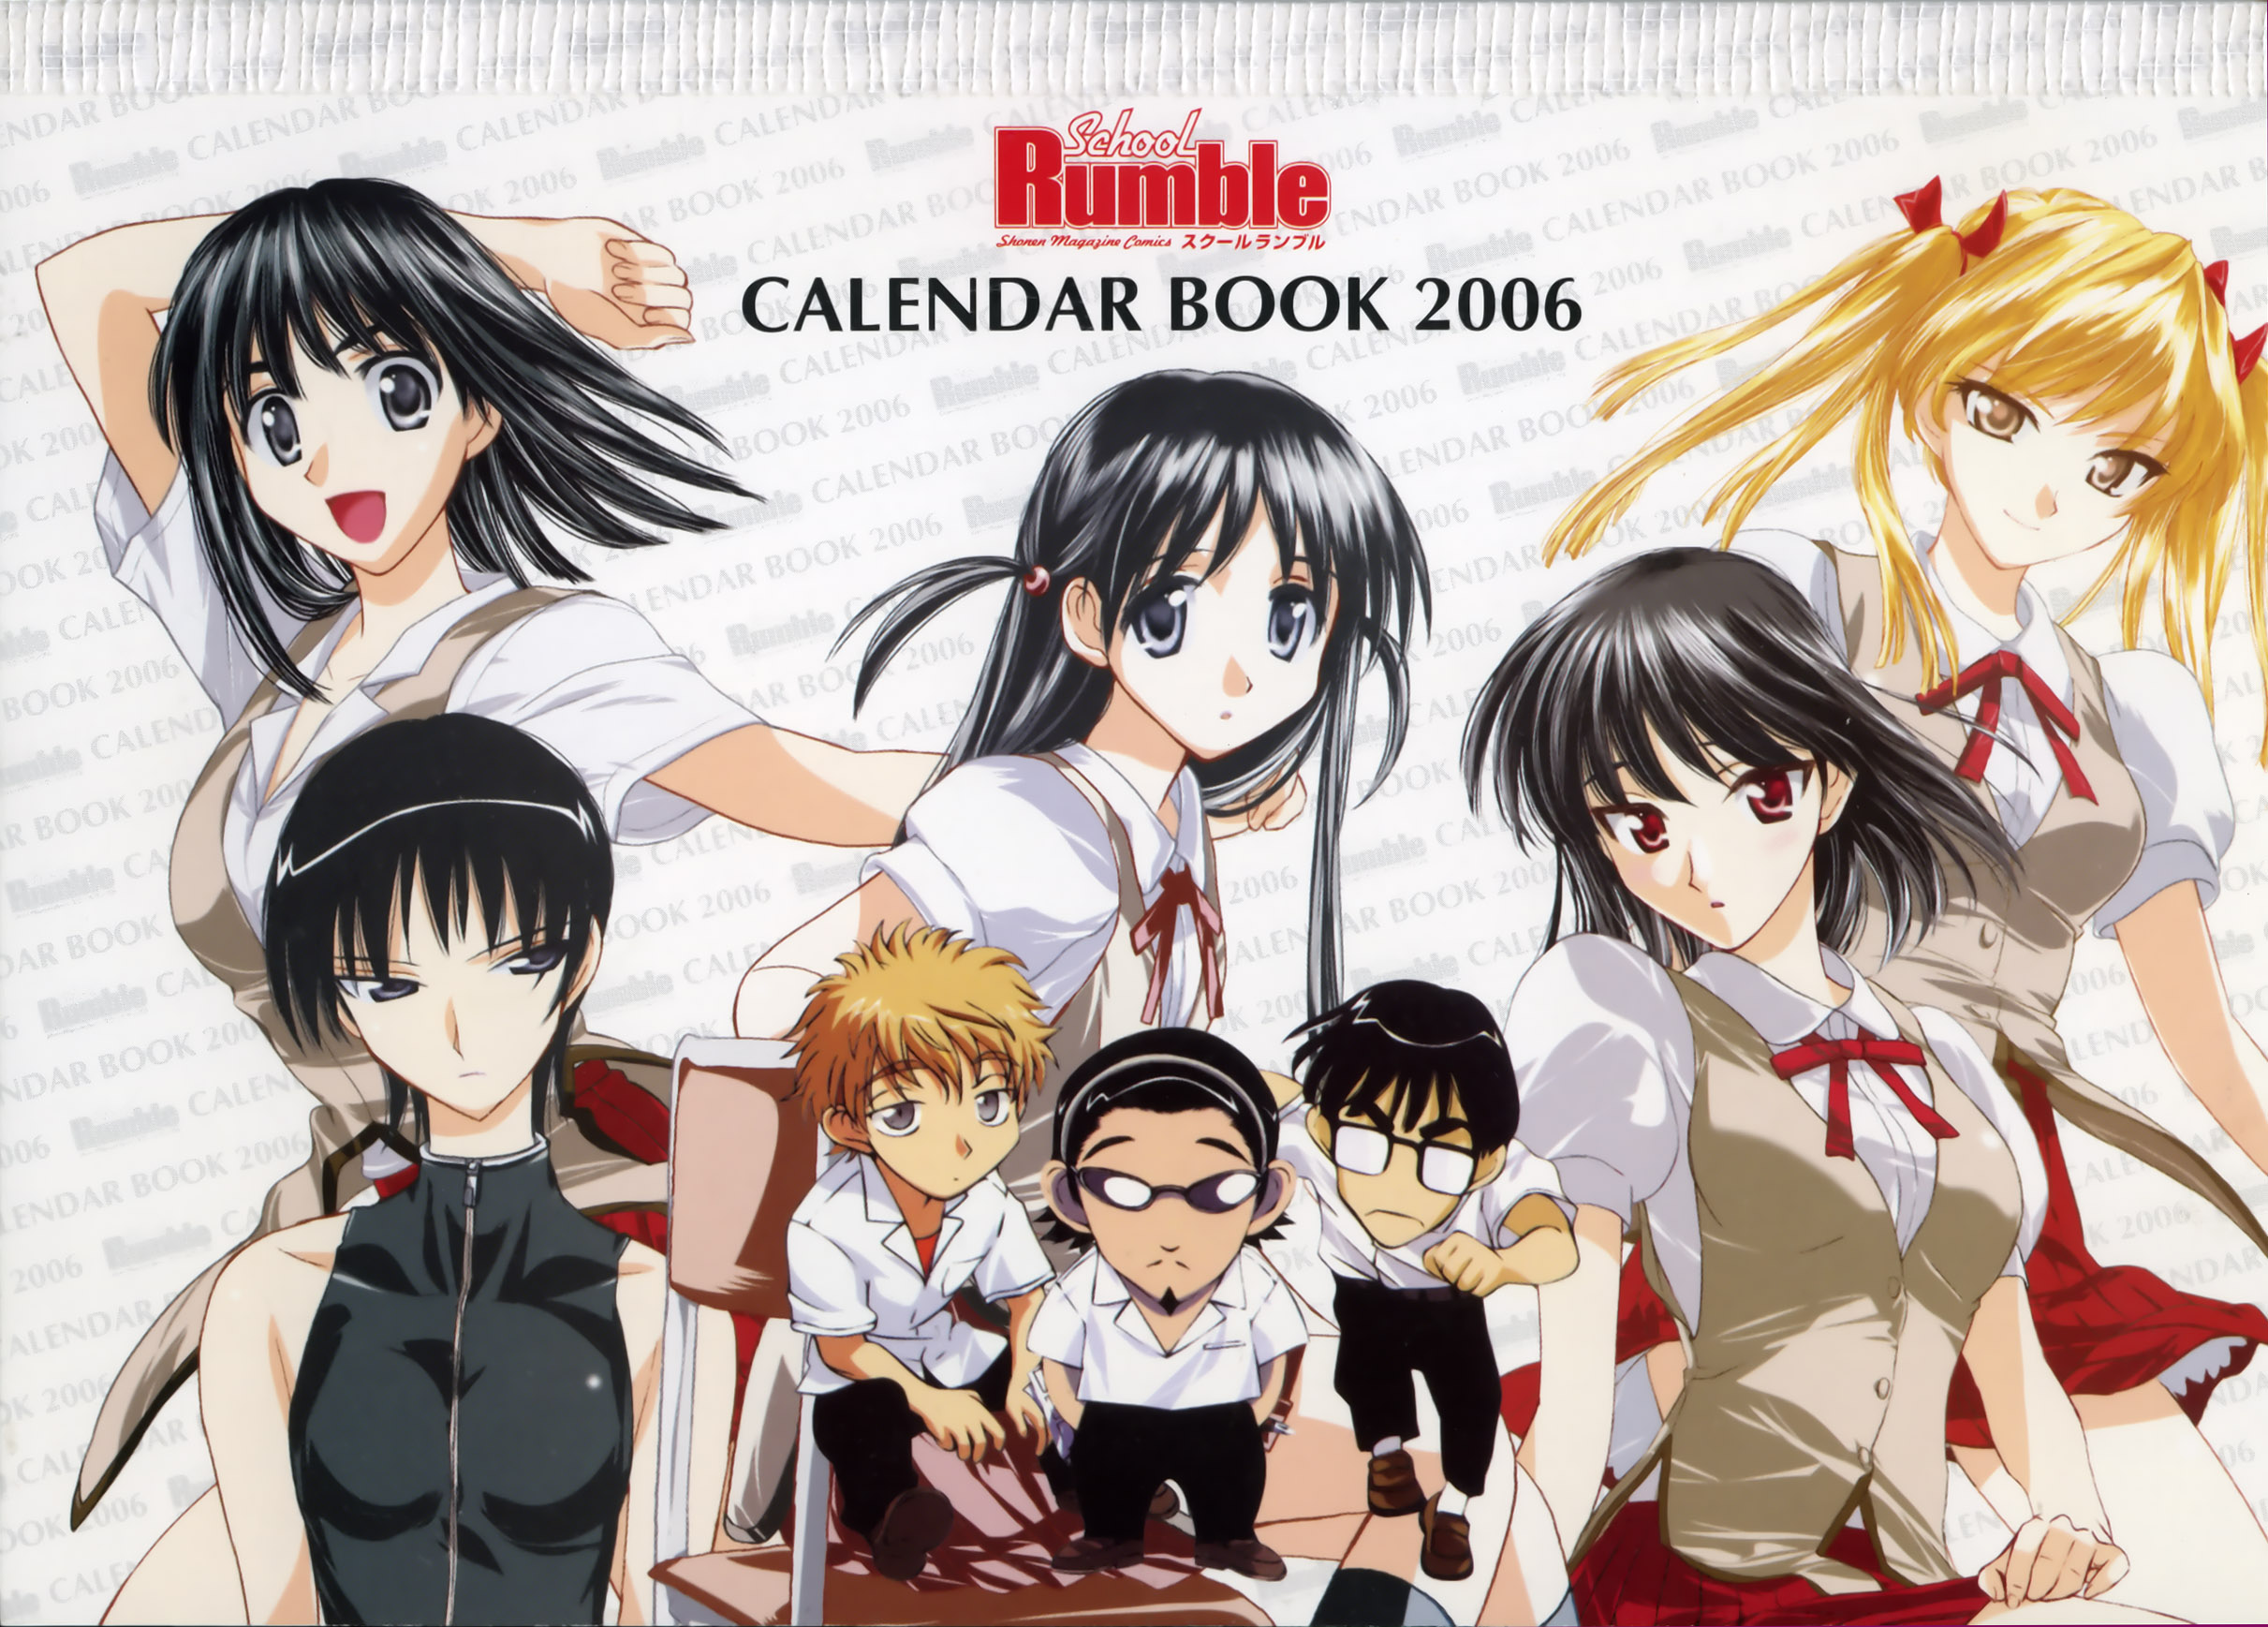 School Rumble Calendario 2006 Imagen en Mxima Calidad